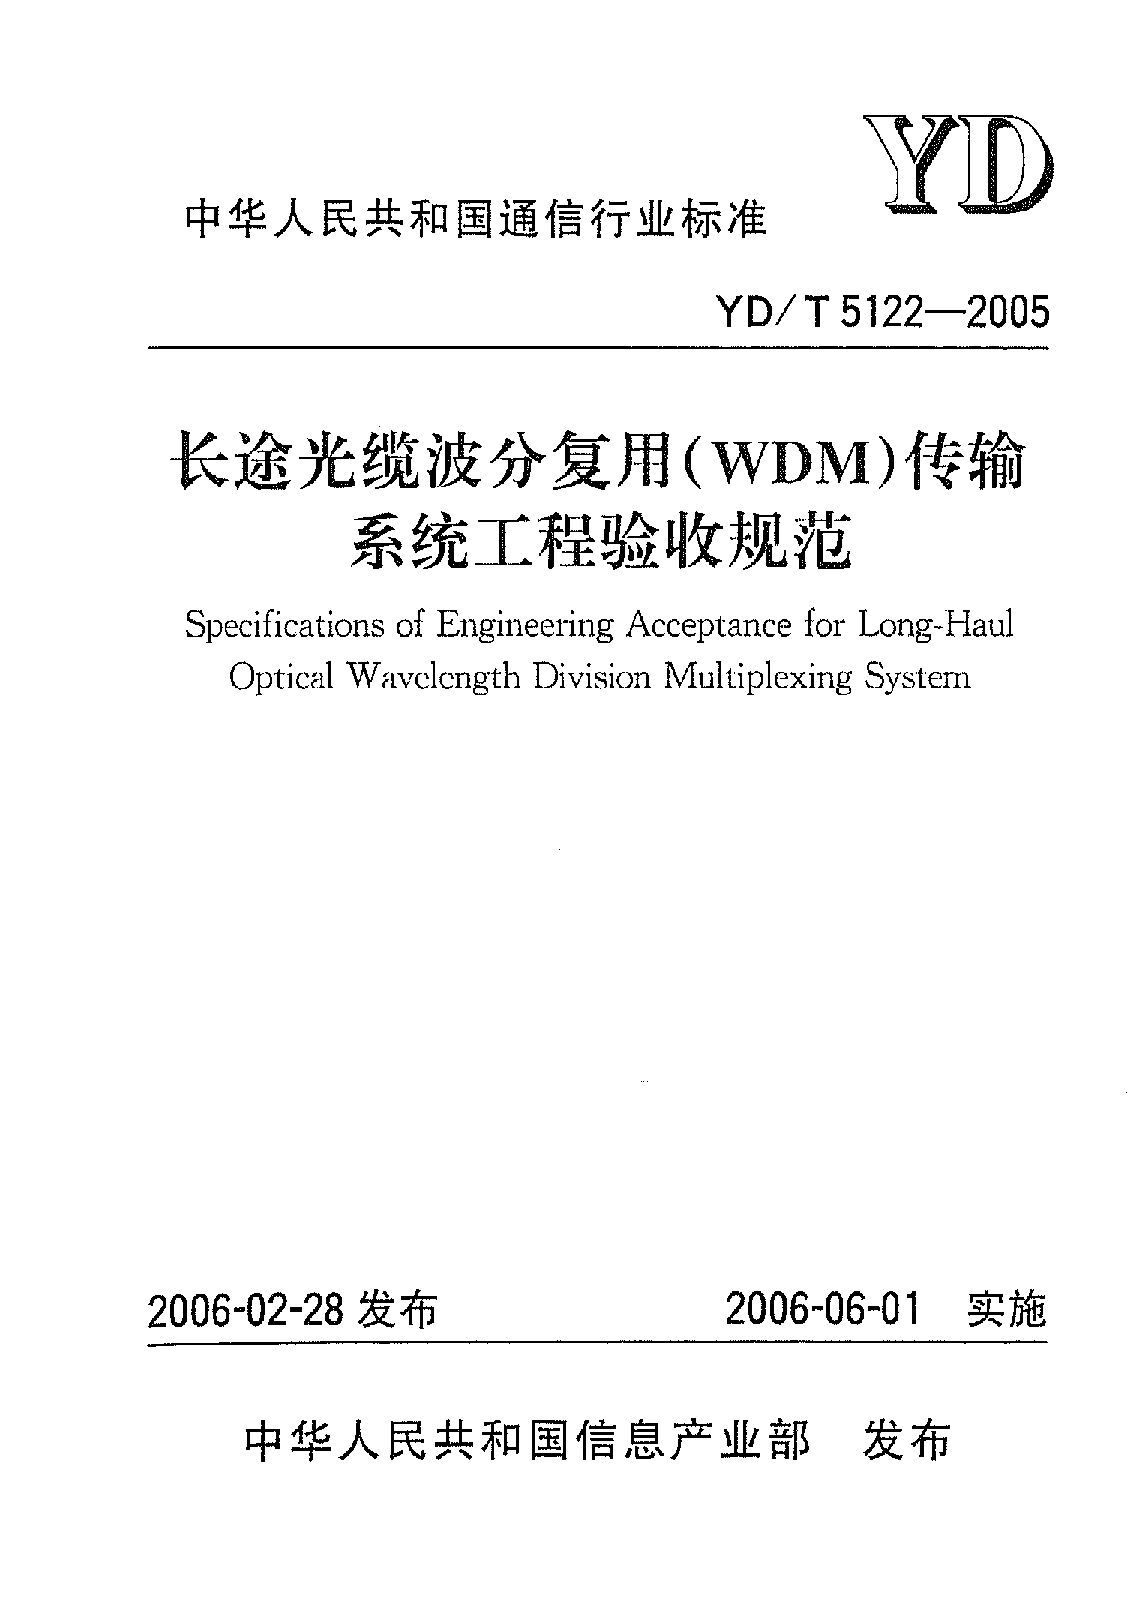 YD/T 5122-2005